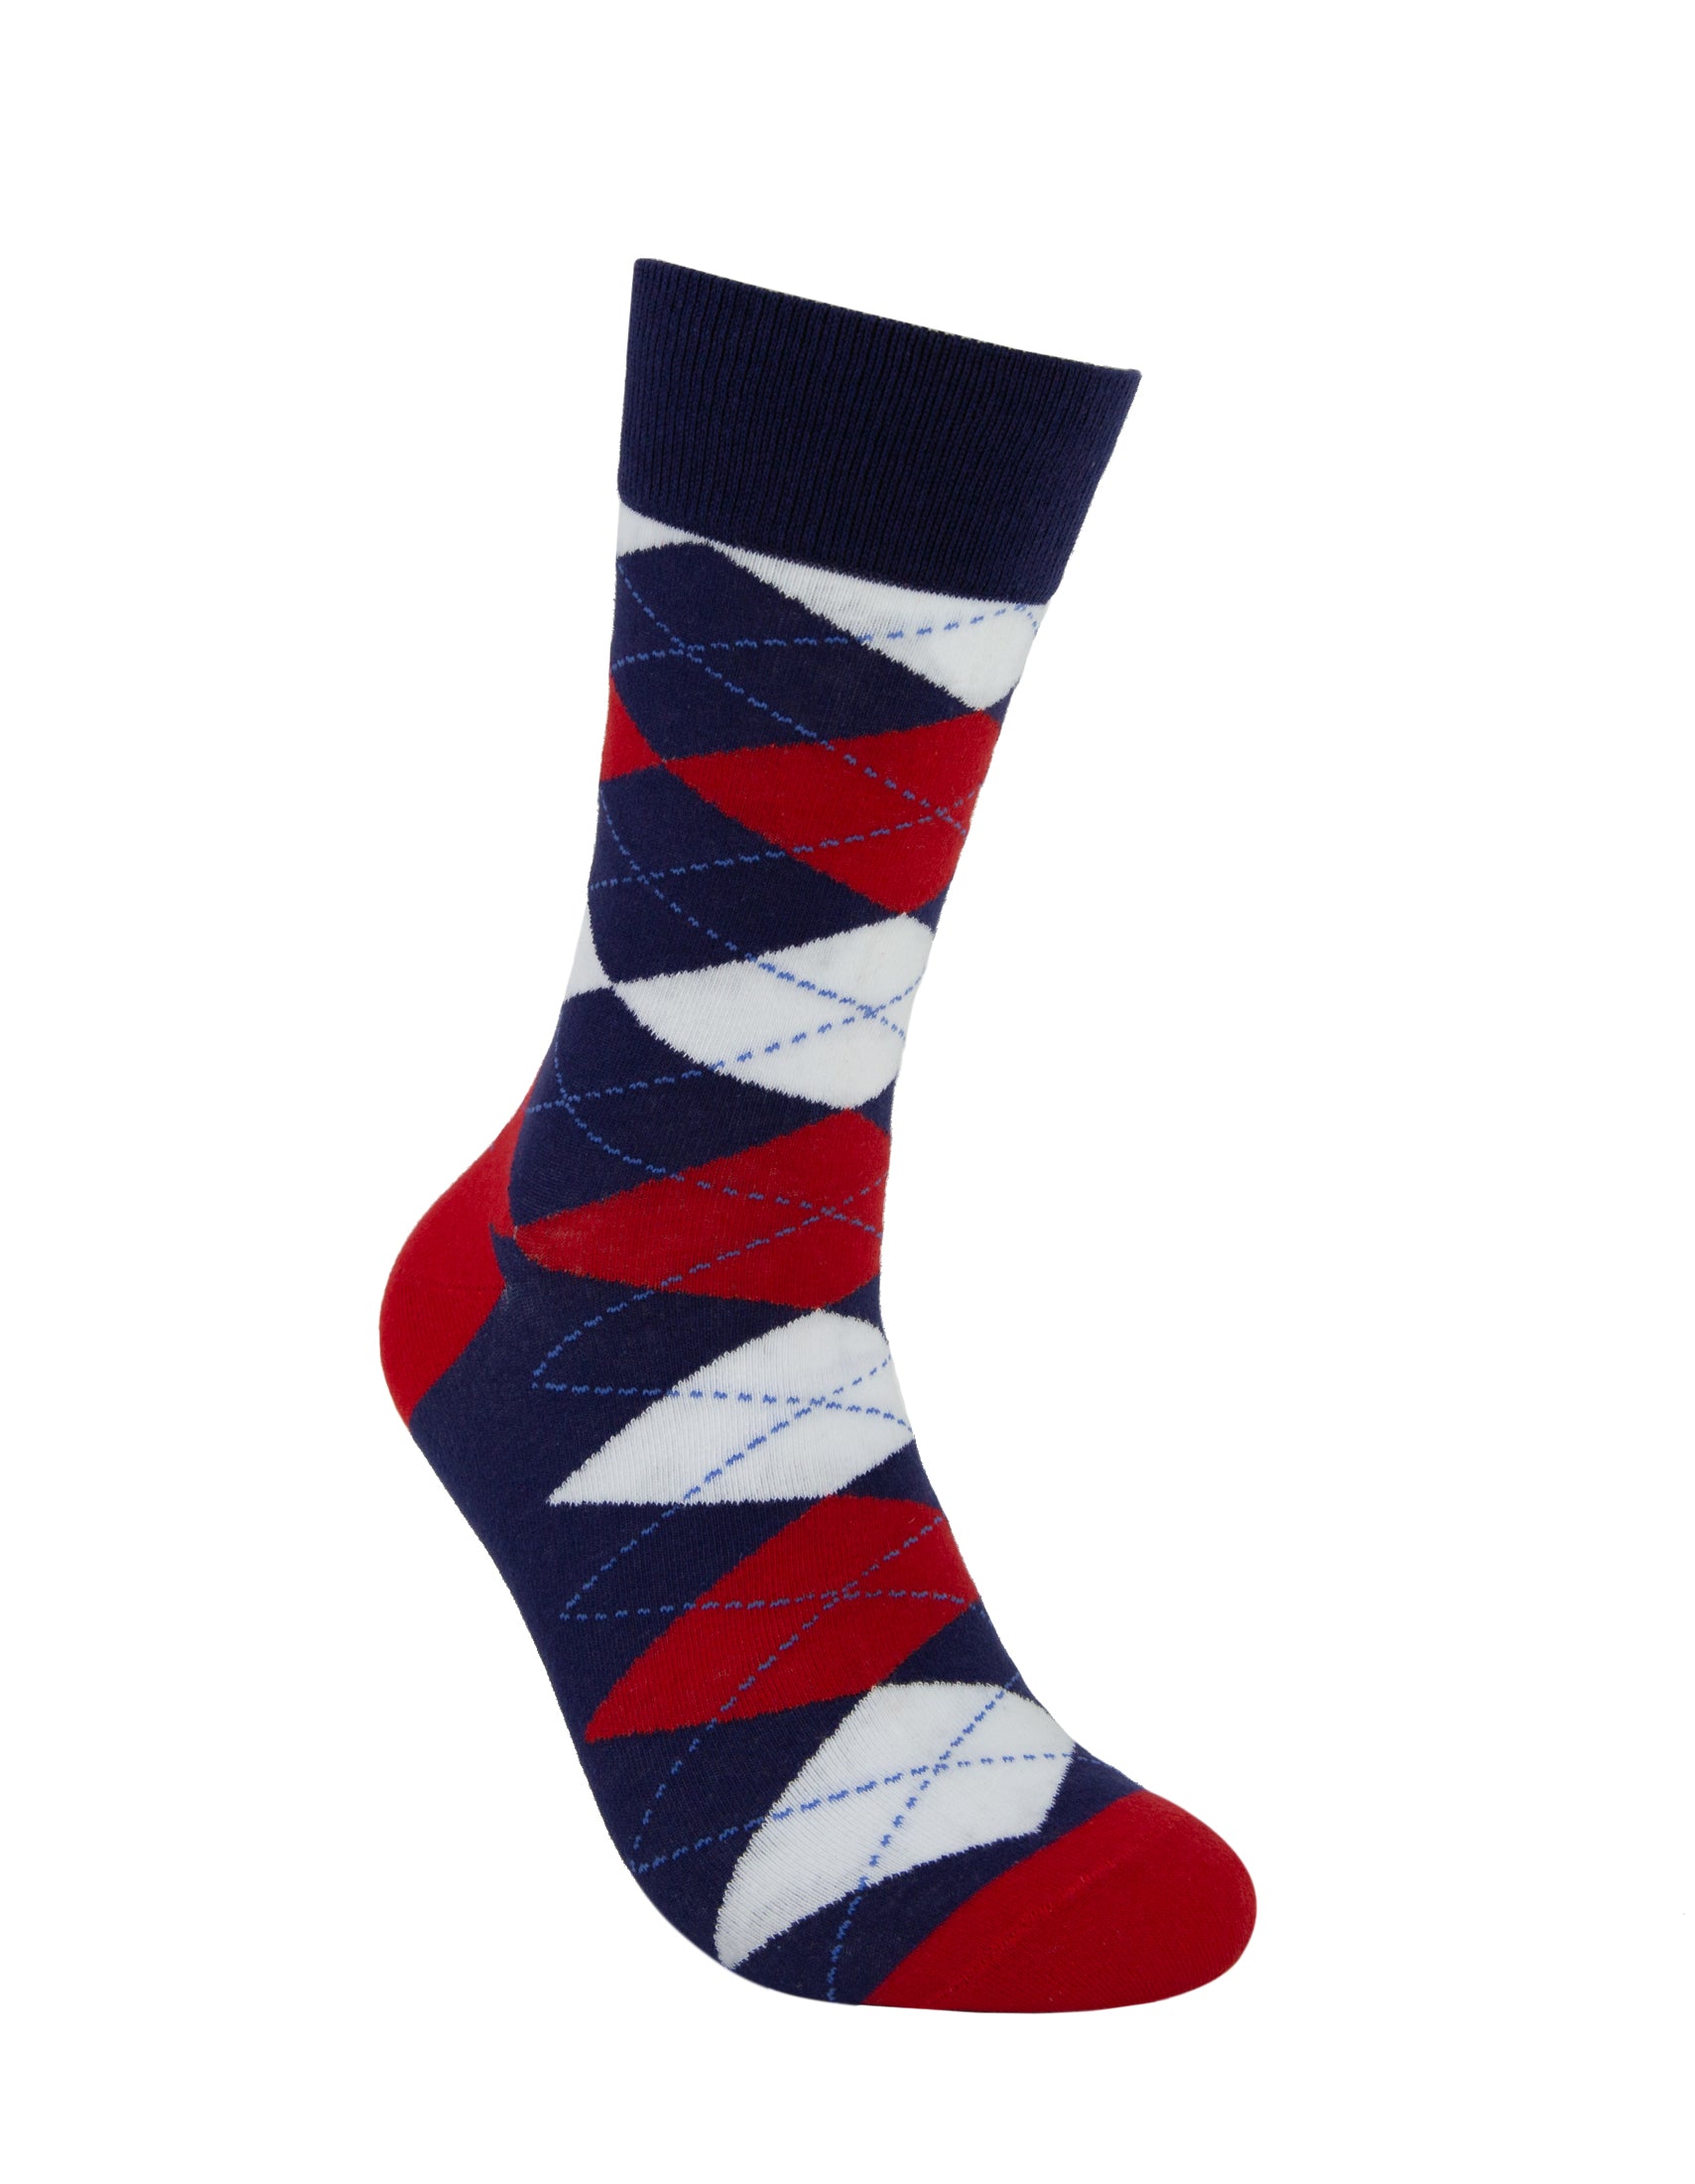 Red Argyle Crew Socks For Men